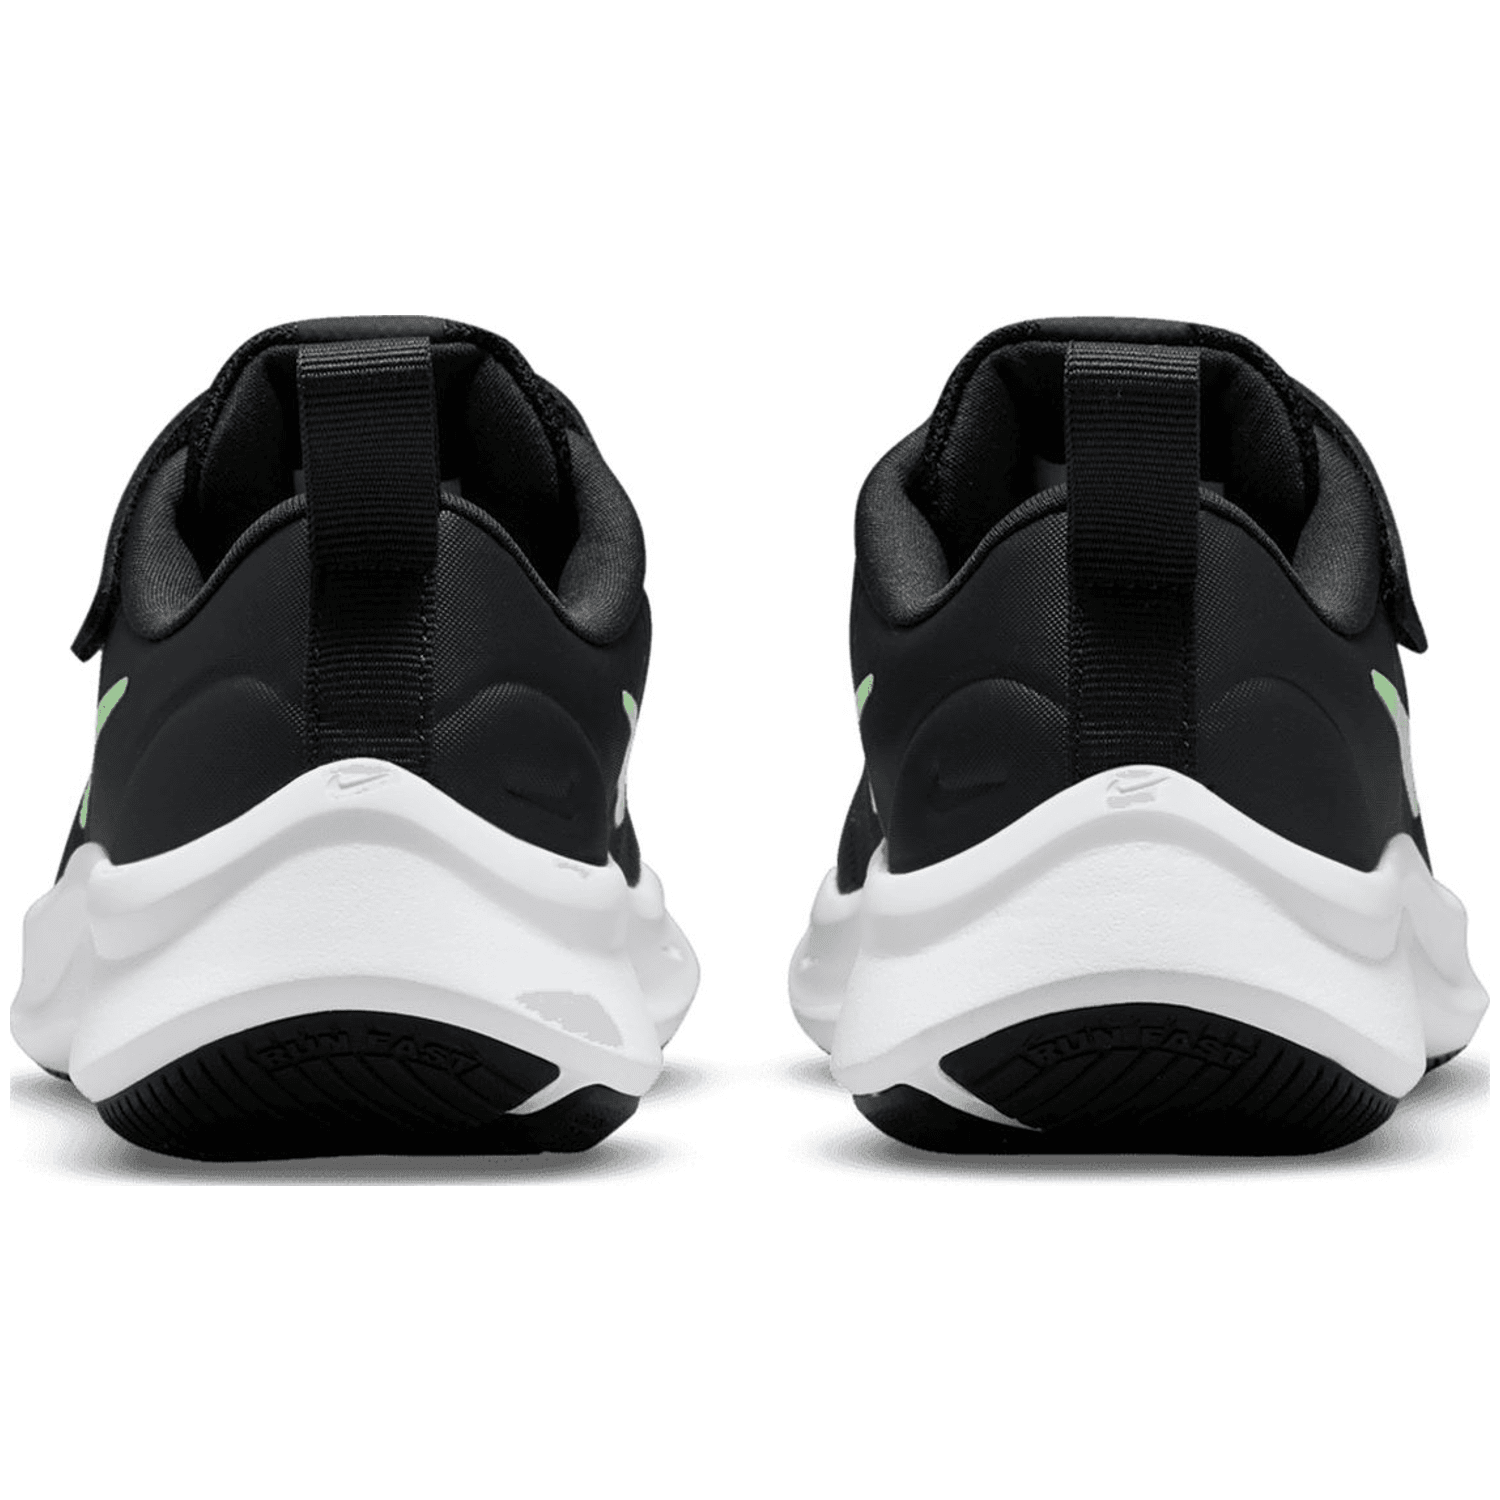 Nike Star Runner 3 Kinder Freizeit-Schuh